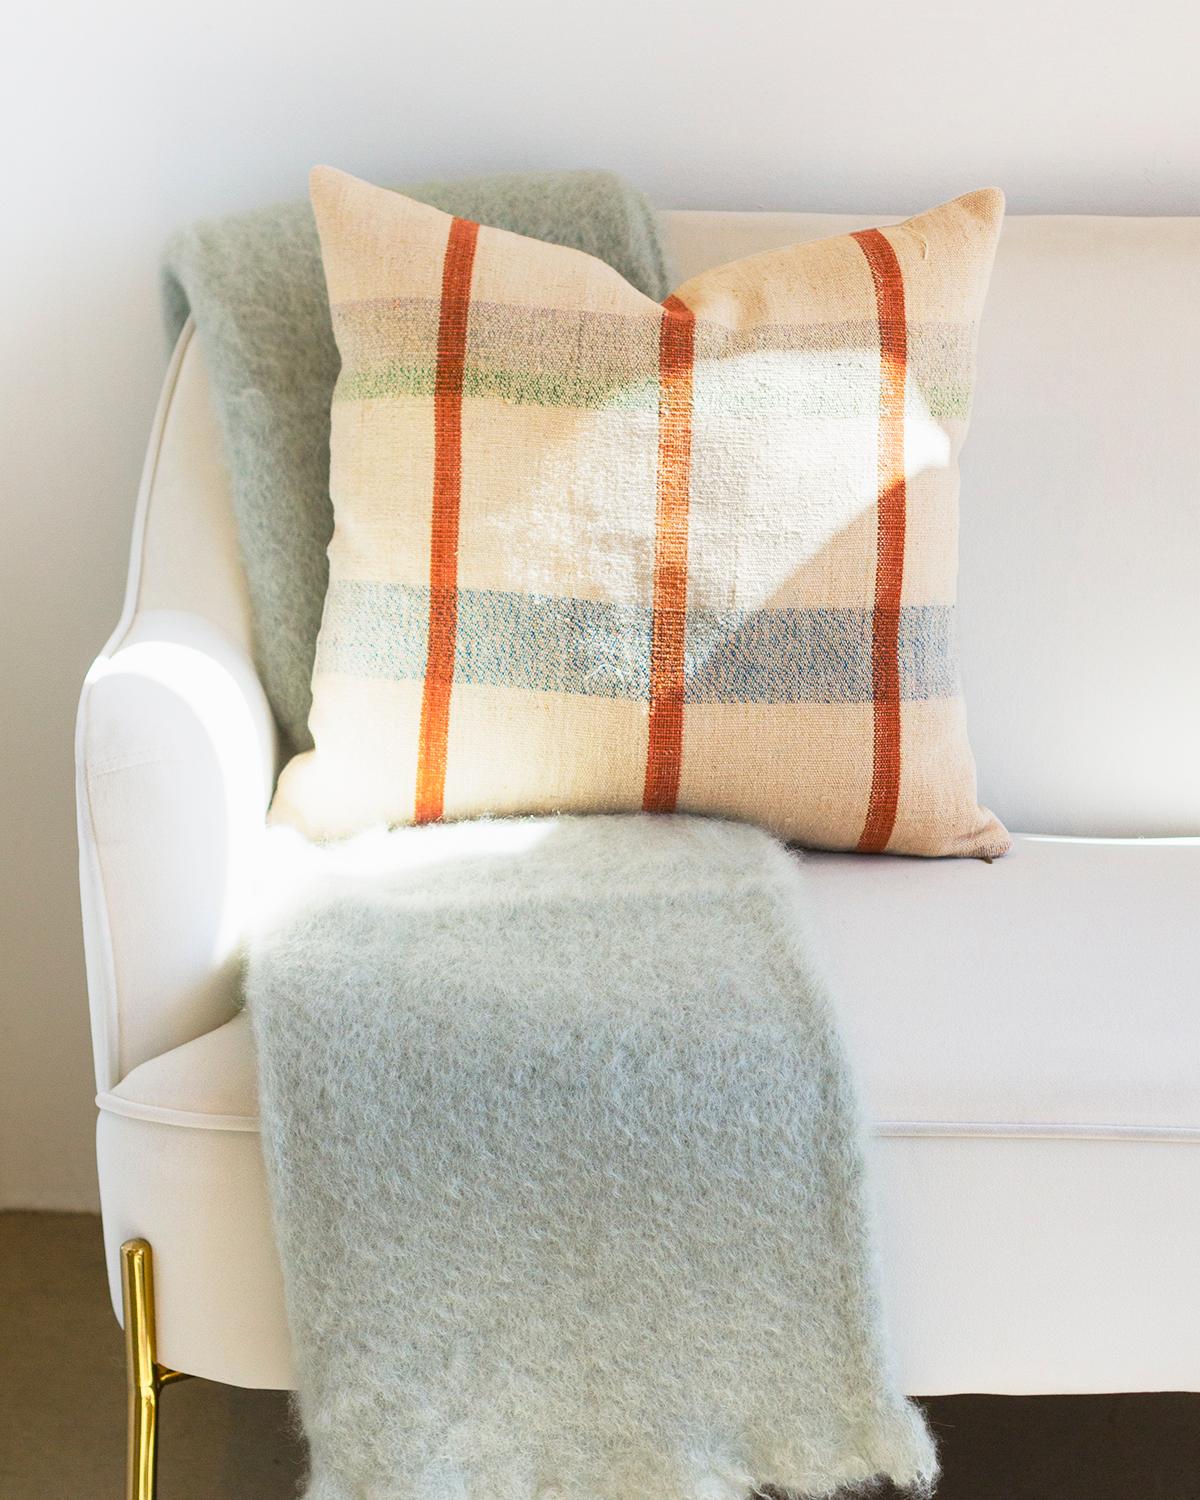 Diese Mohair-Decke in Seafoam sorgt für ein weiches, kuscheliges Gefühl und wärmt Sie im Winter. Das helle Grau mit einem Hauch von grünlichem Blau bietet einen einzigartigen, neutralen Look für jedes Zuhause und sorgt für einen ruhigen Luxus. Jede